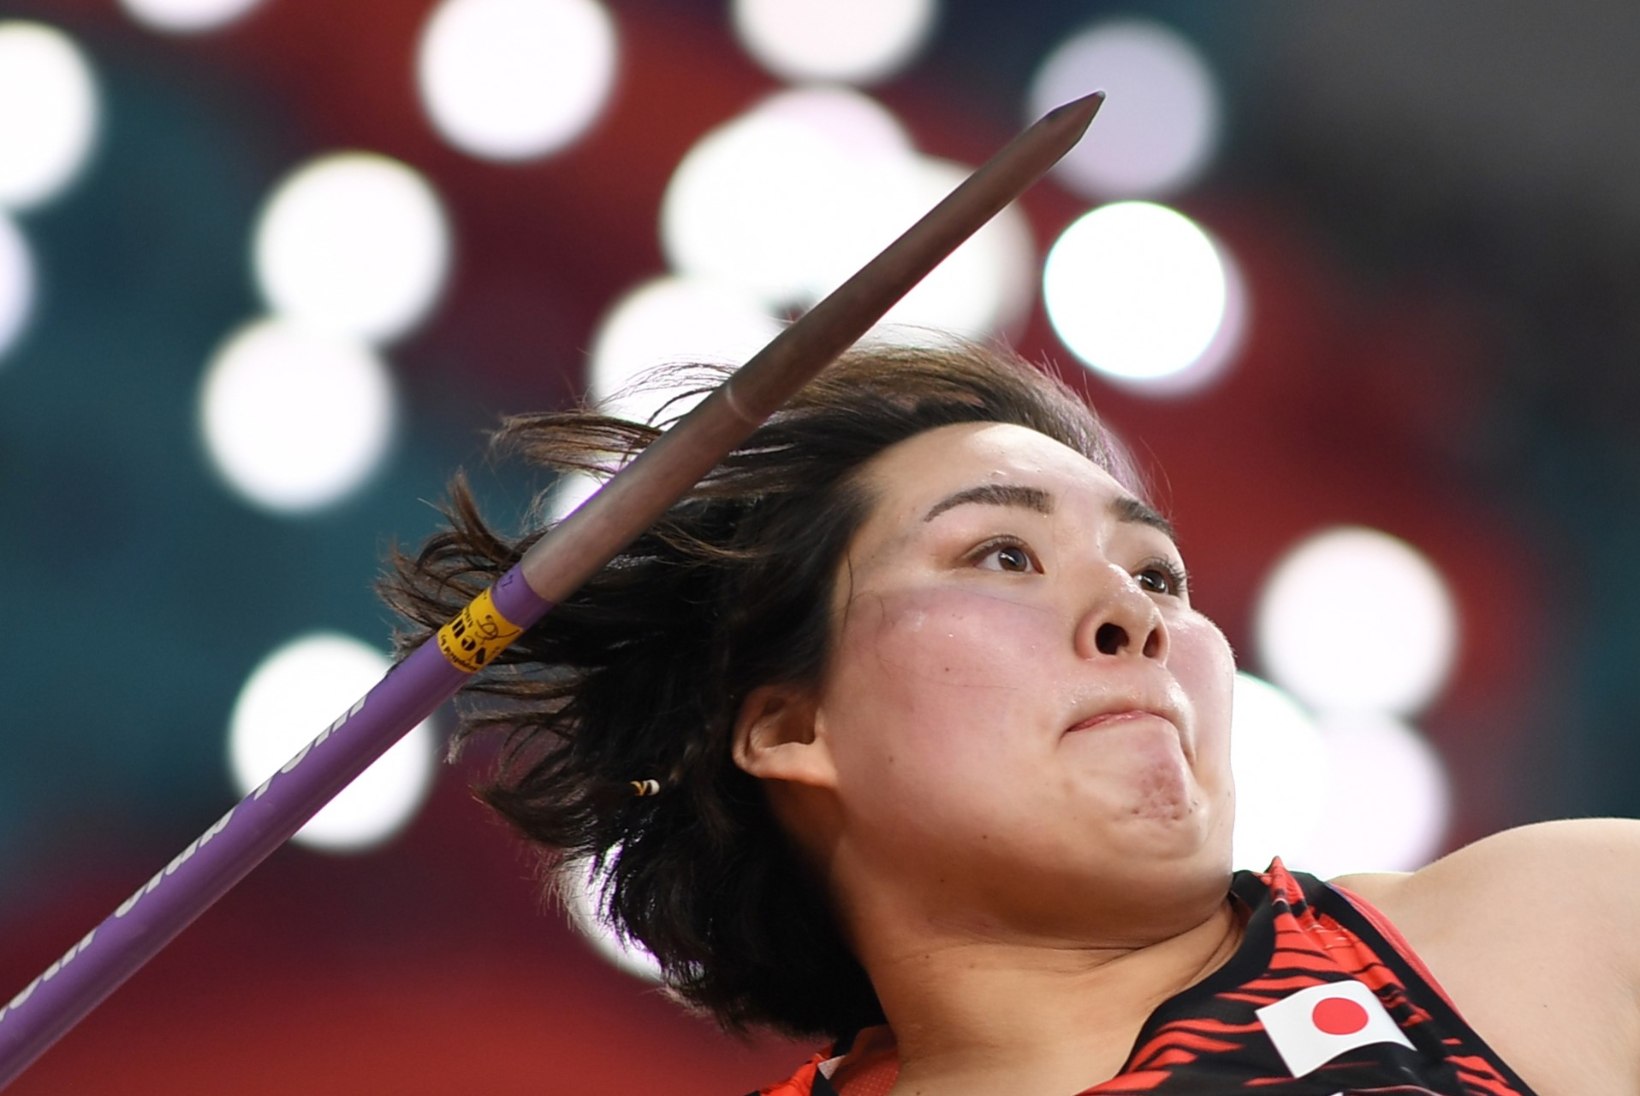 HUVITAV: Jaapani kergejõustiklased püstitavad oktoobri lõpus rekordeid. Mis saab Tokyo olümpial?